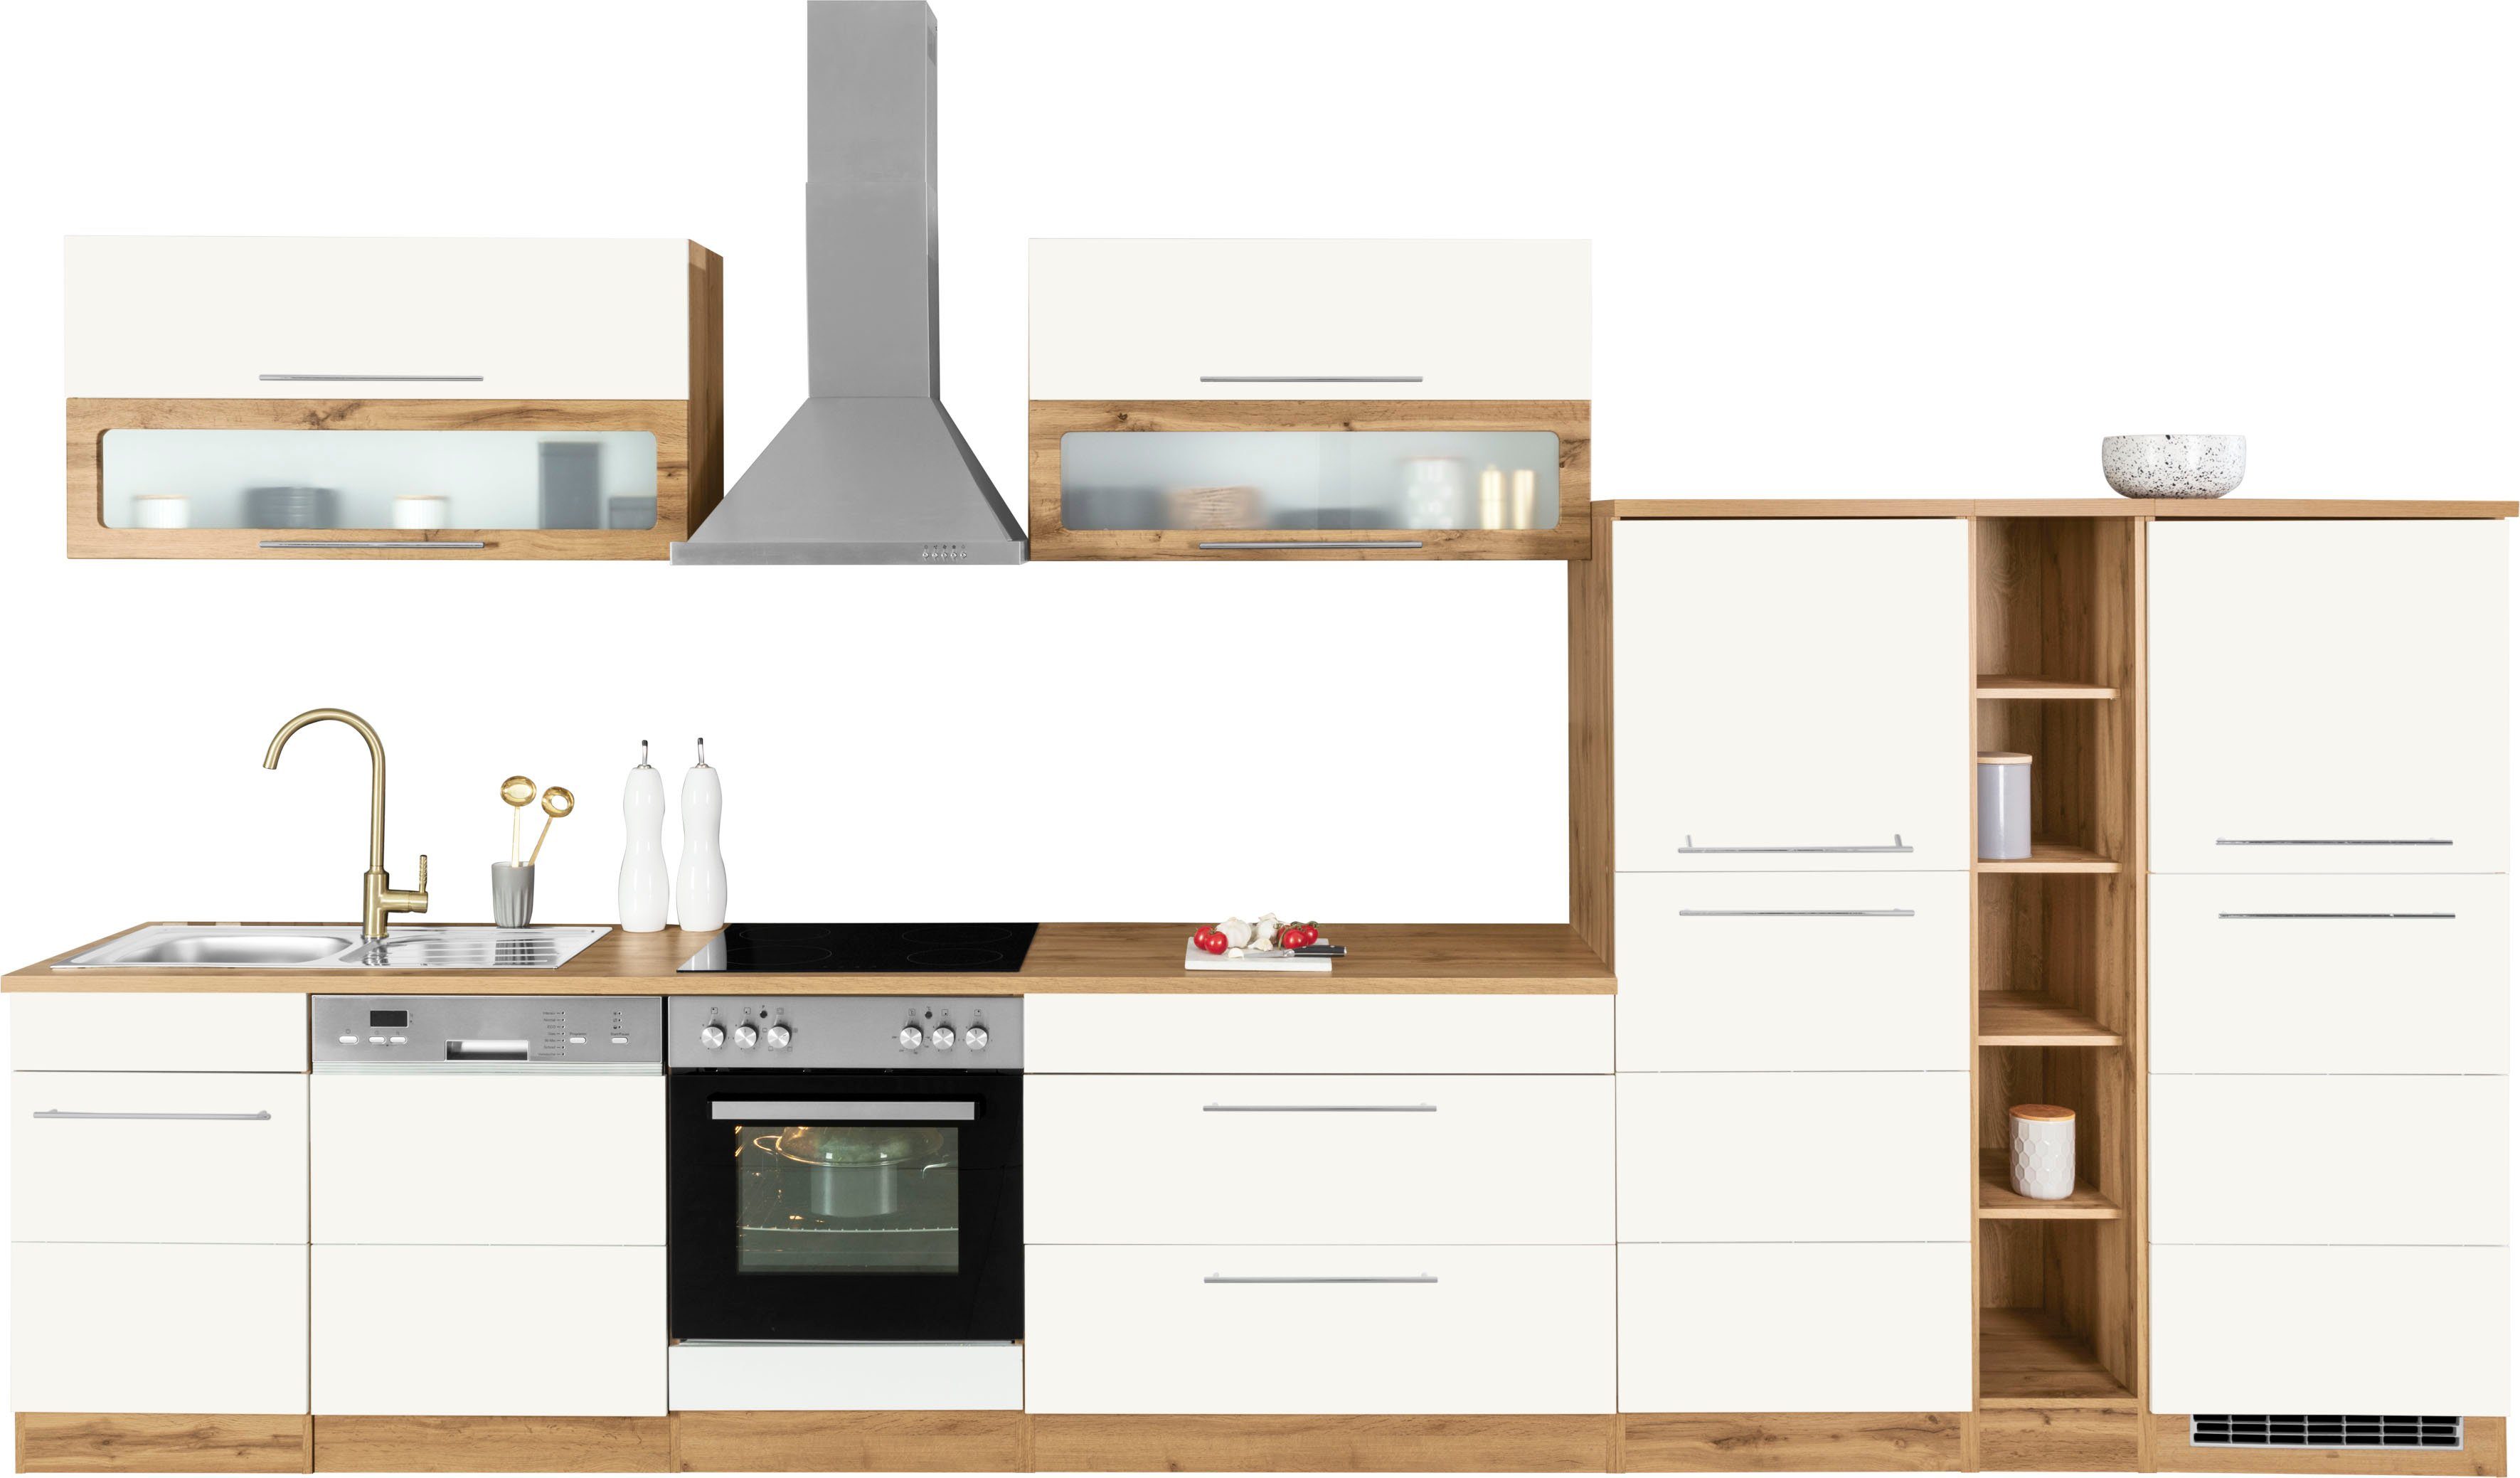 Kochstation Küchenzeile KS-Wien, Breite 420 cm, wahlweise mit E-Geräten